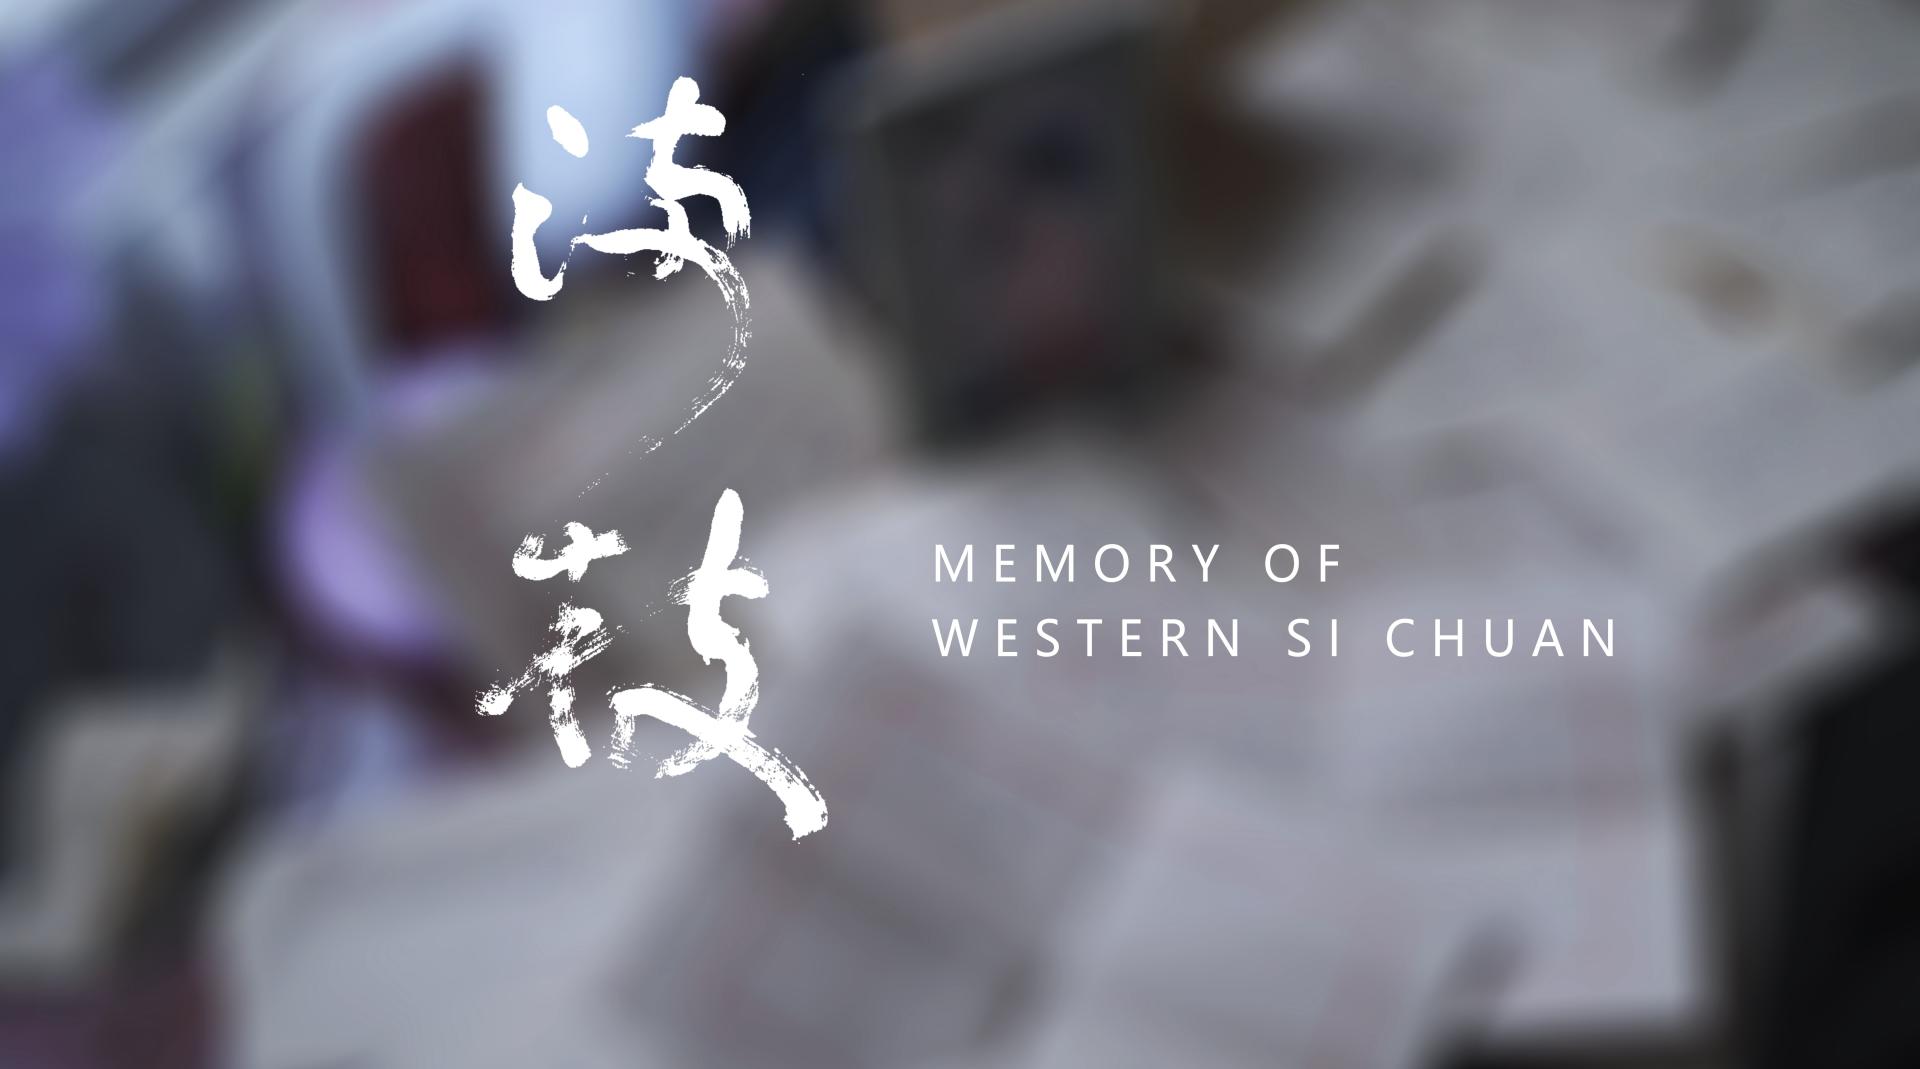 《满枝》——Memory Of Western Si Chuan